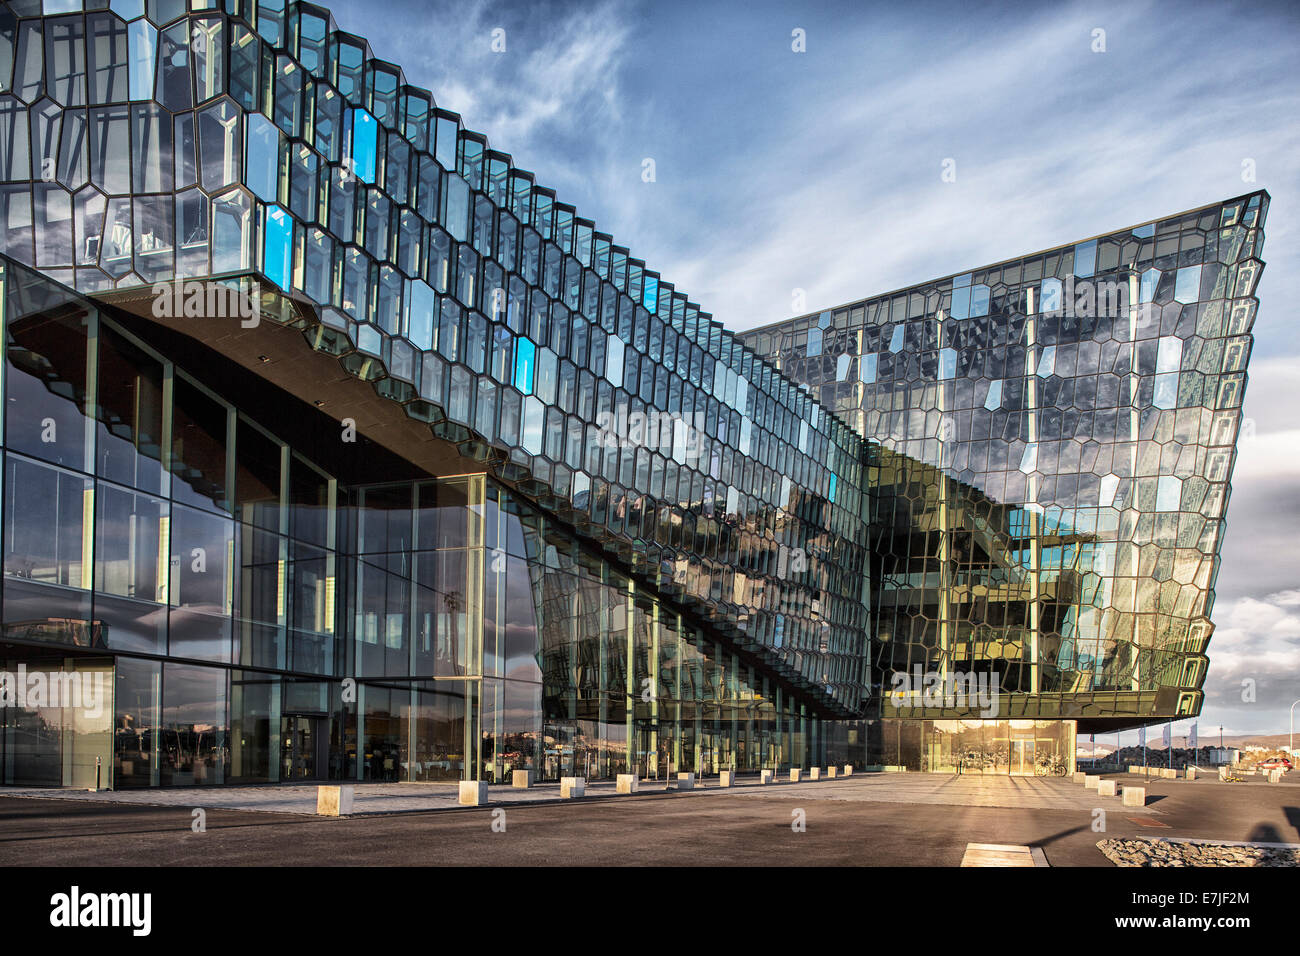 L'architecture, l'attraction, façade, façade en verre, port, port, harpe, Harpa, capitale, l'Islande, l'Europe, centre de conférence, concert Banque D'Images